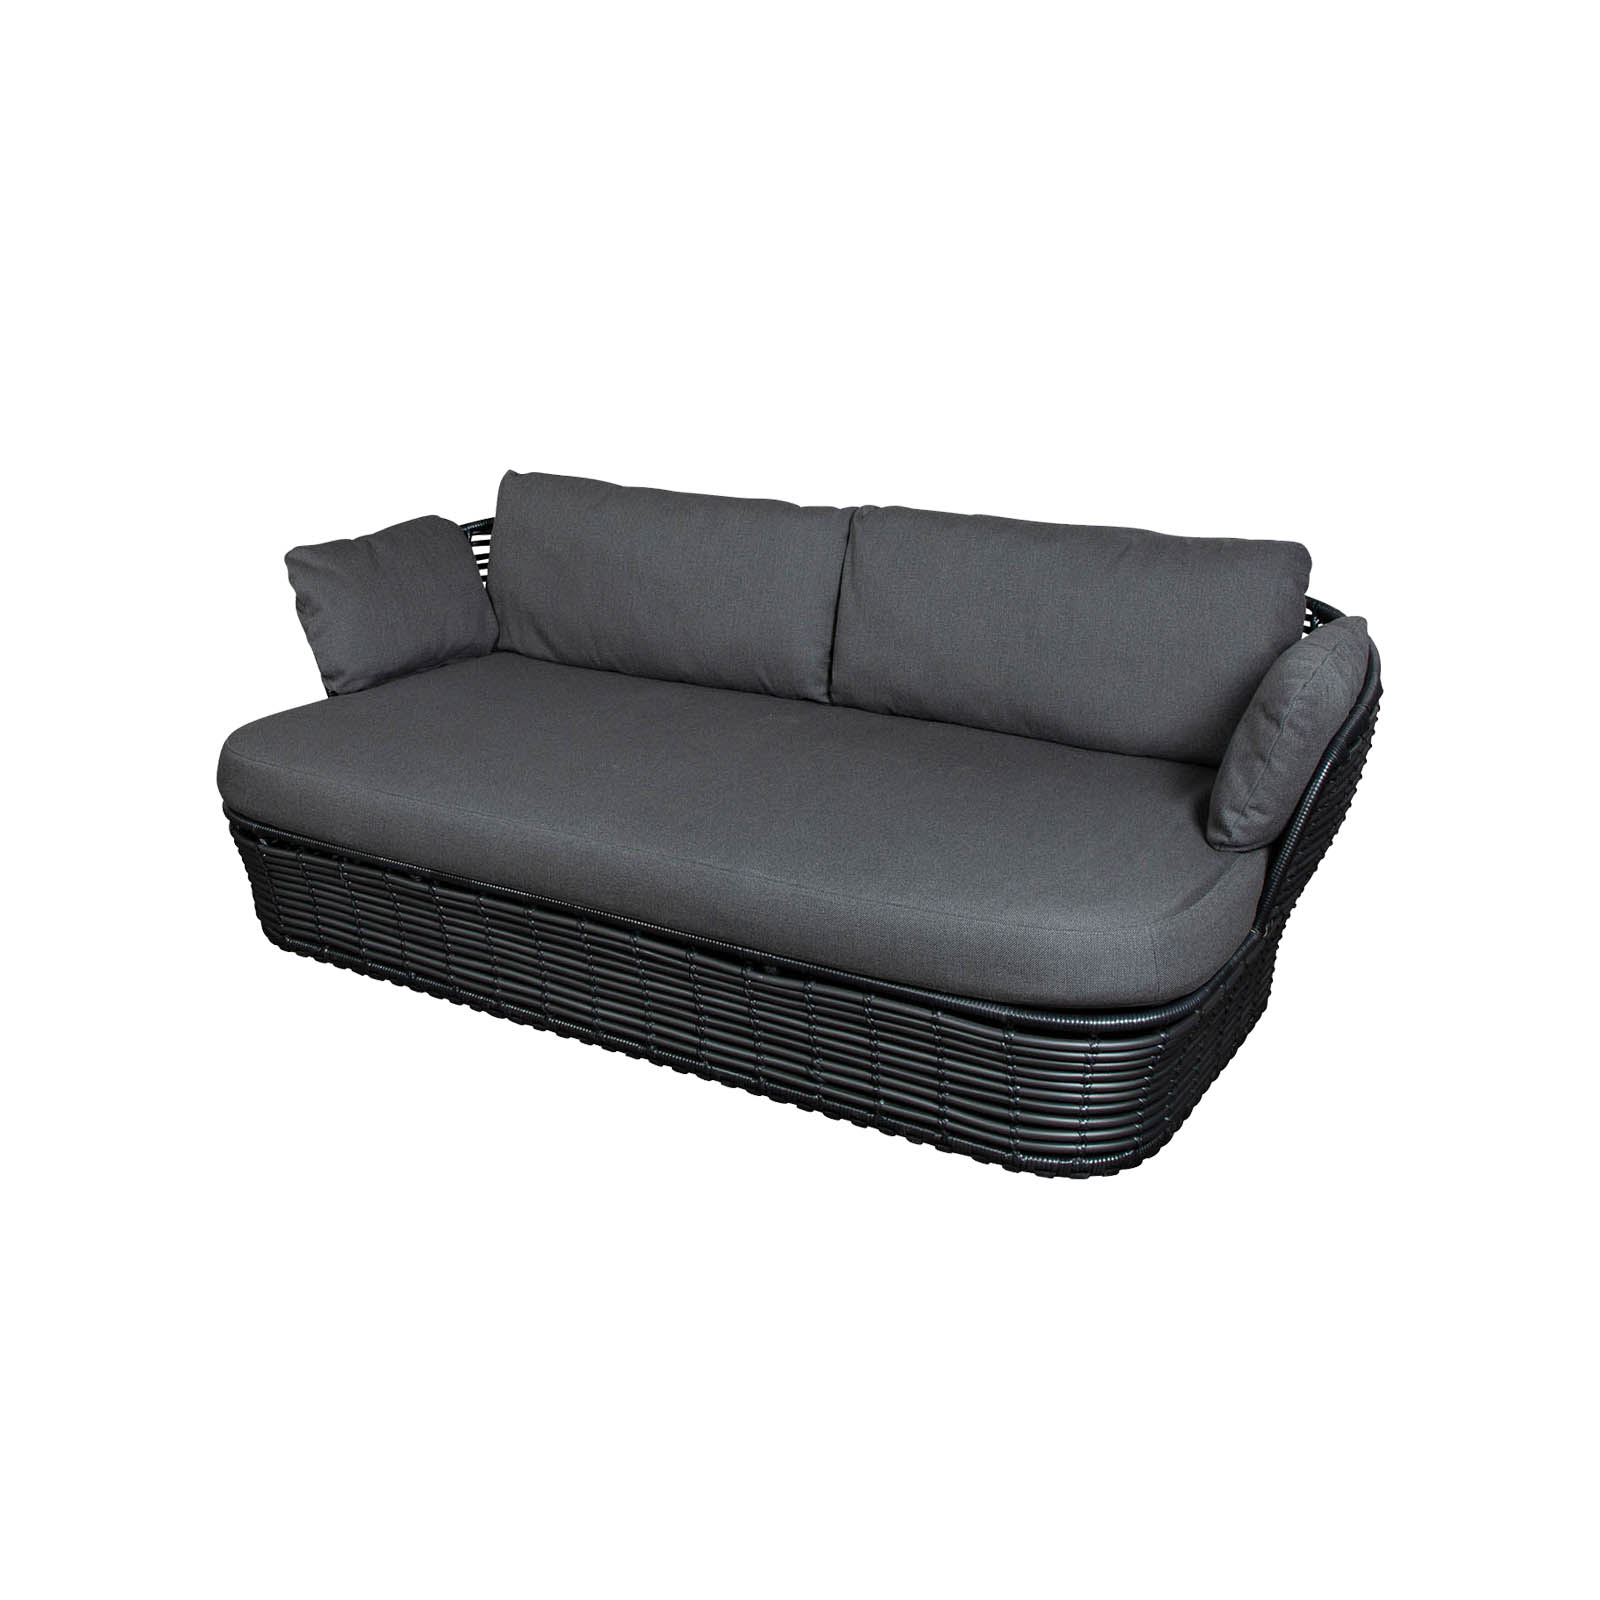 Basket 2-Sitzer Sofa aus Cane-line Weave in Graphite mit Kissen aus Cane-line AirTouch